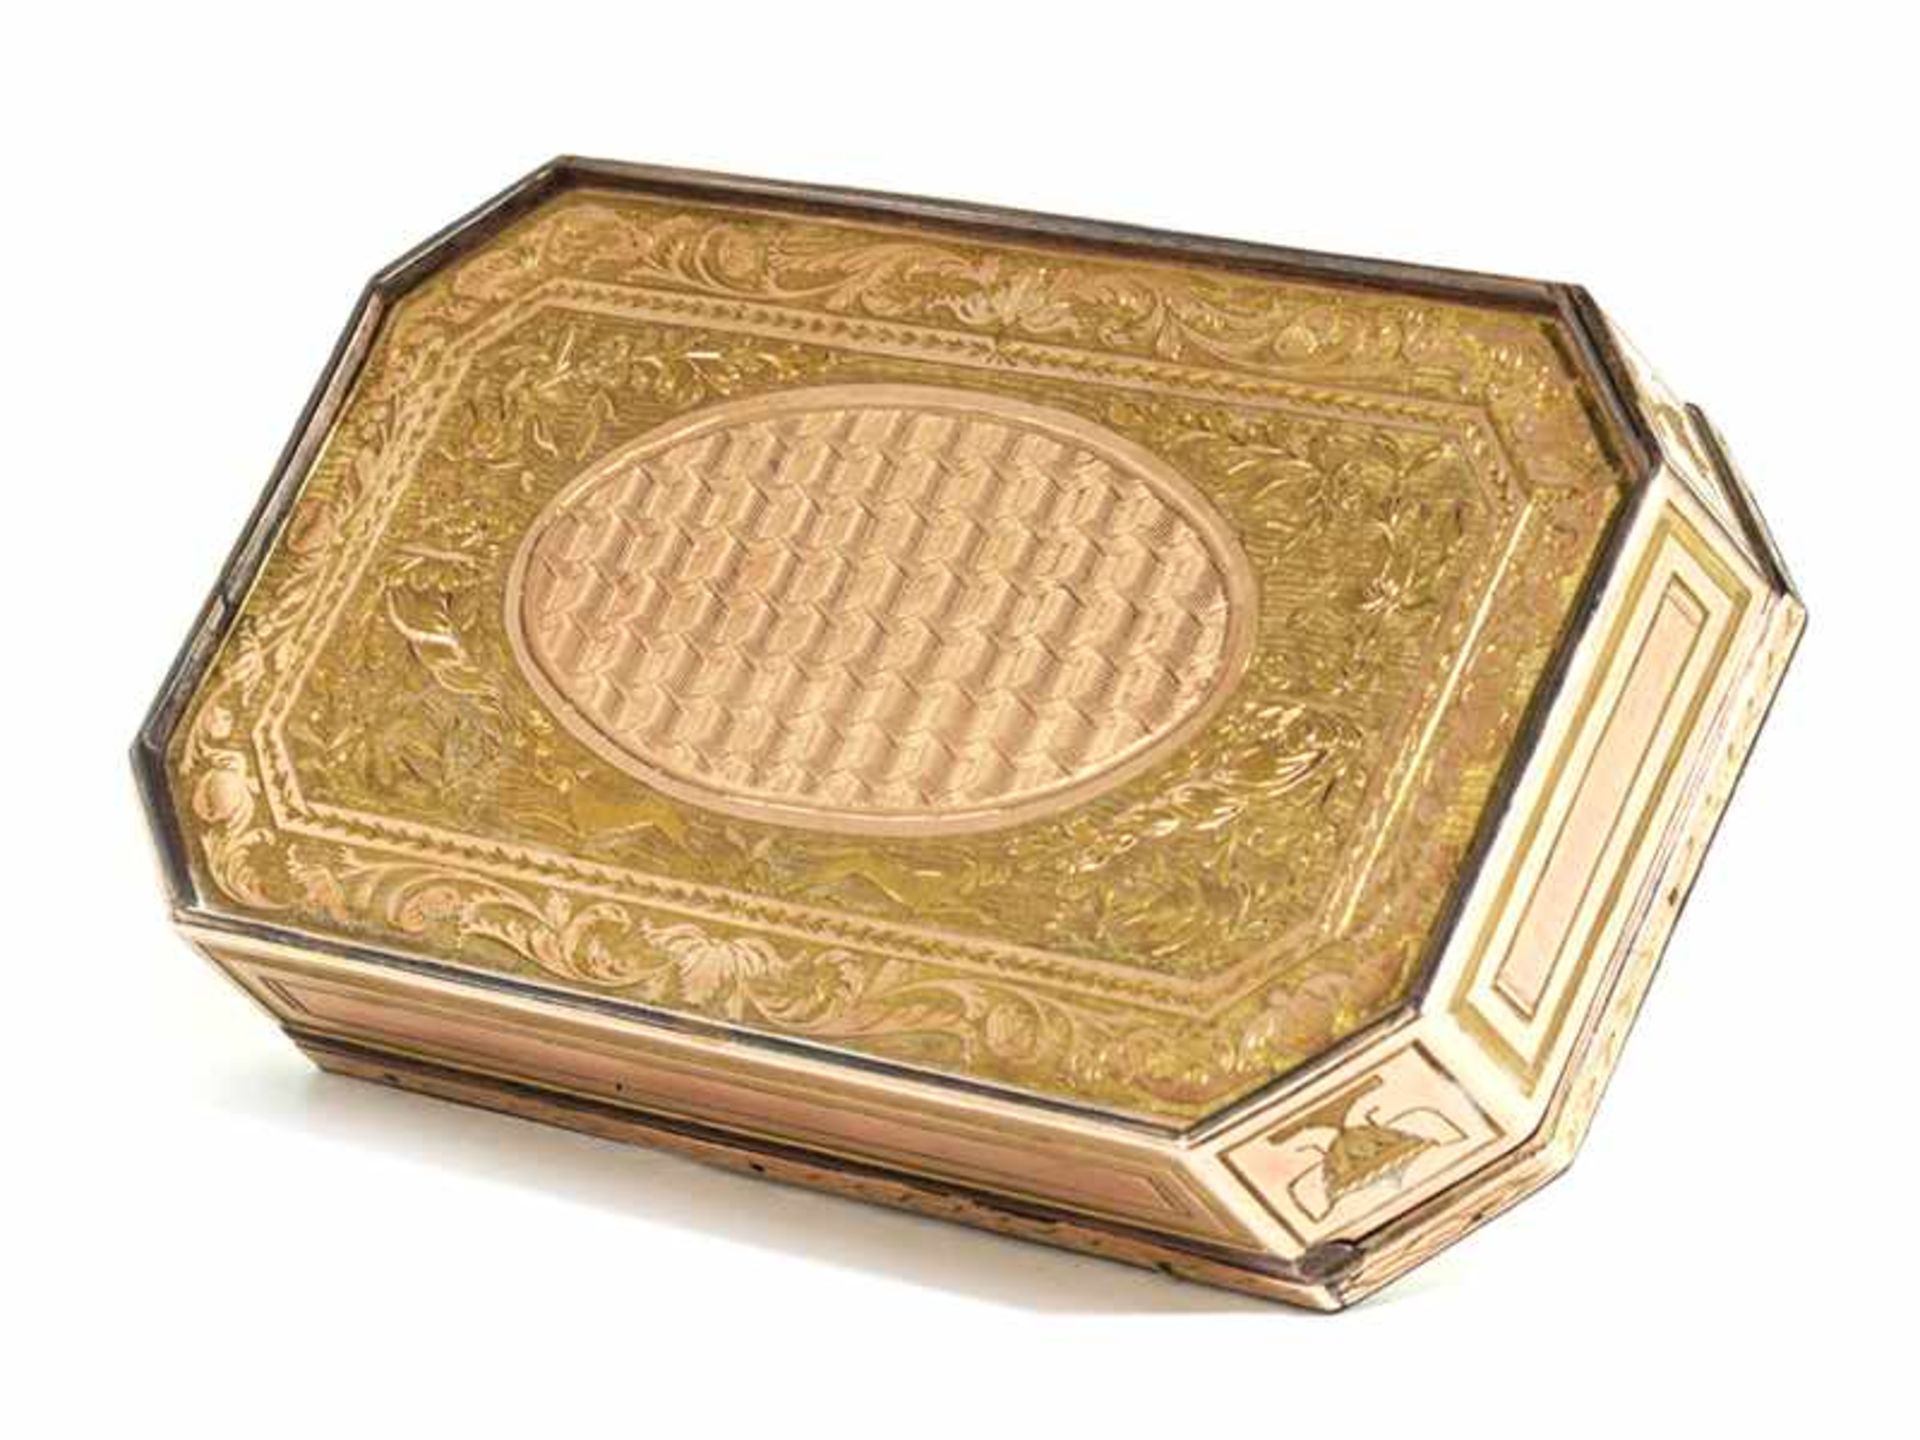 Pariser Golddose 1,8 x 8,7 x 5,1 cm. Gewicht: 102 g. Inwandig zweifach mit Jahresbuchstaben - Bild 3 aus 5